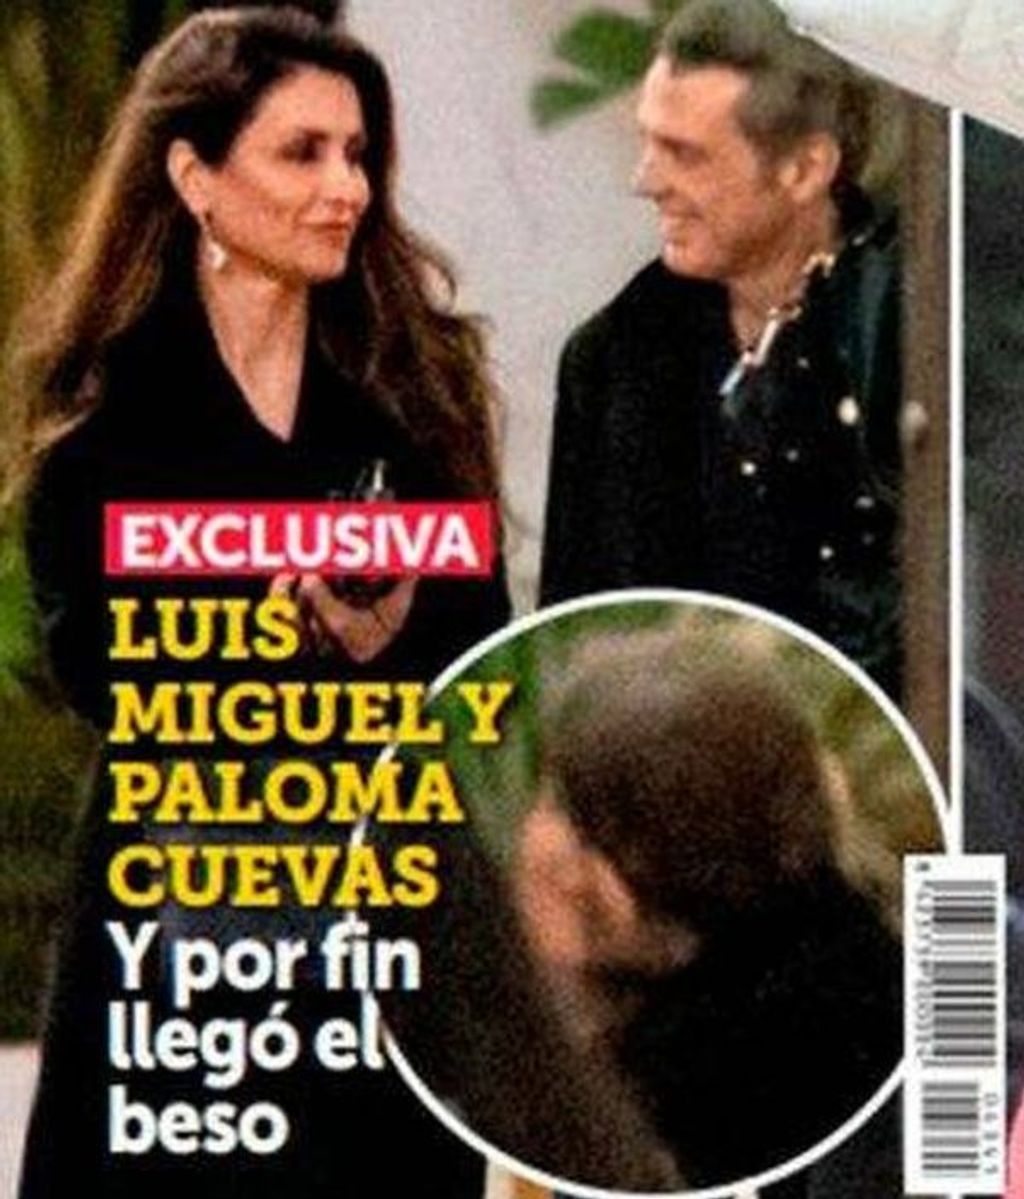 La imagen del beso entre Luis Miguel y Paloma Cuevas